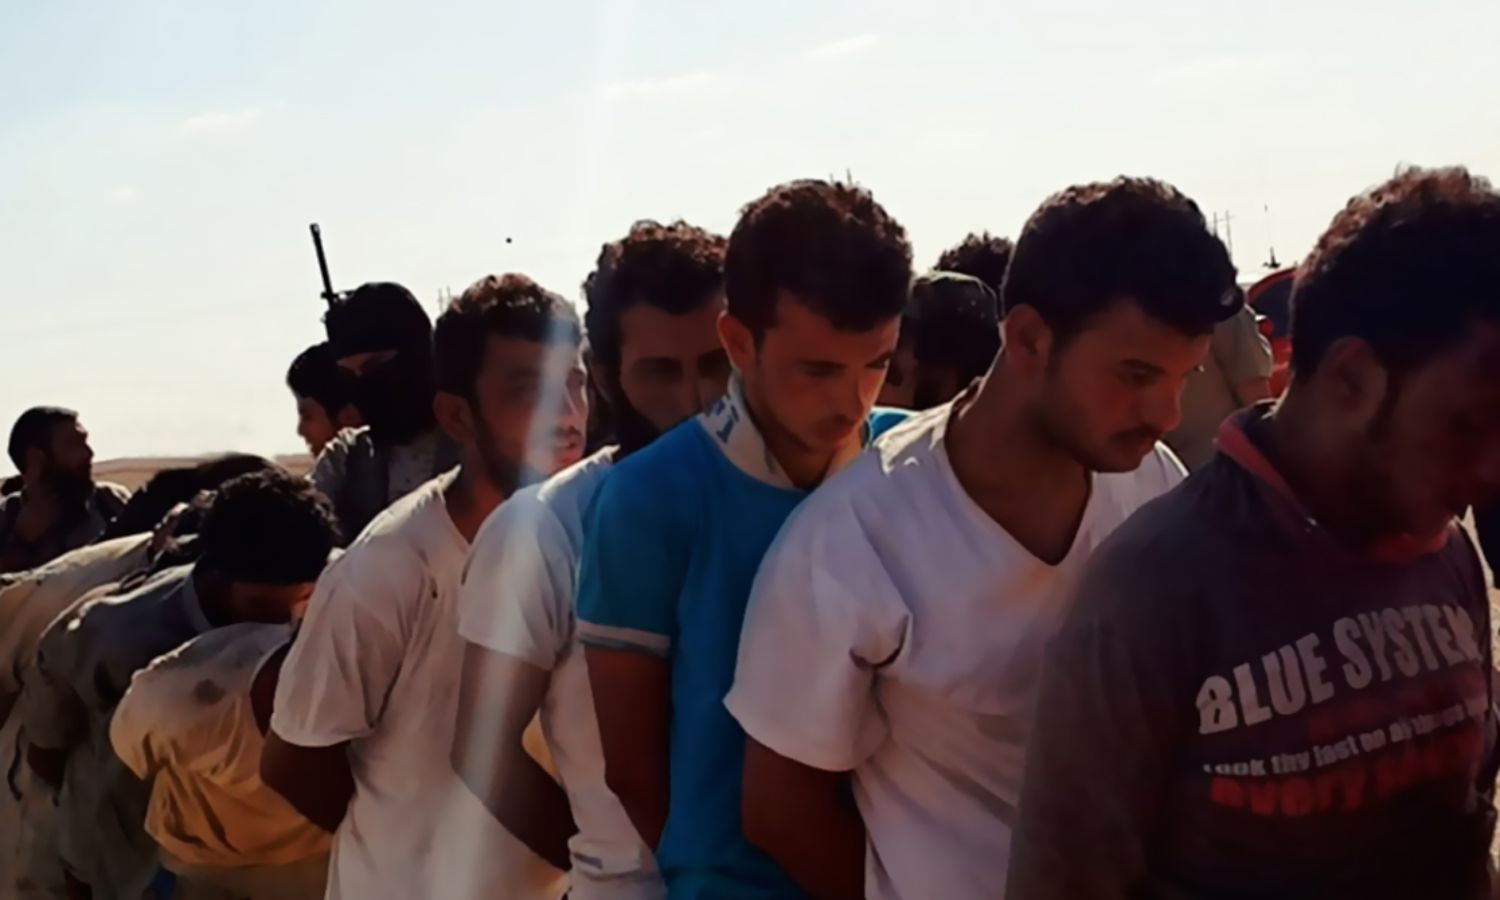 مجموعة من الشباب اقتادهم عناصر من تنظيم الدولة لإعدامهم خلال ما يعرف باسم "مجزرة الشعيطات" شرقي دير الزور- آب 2014 (تنظيم الدولة)